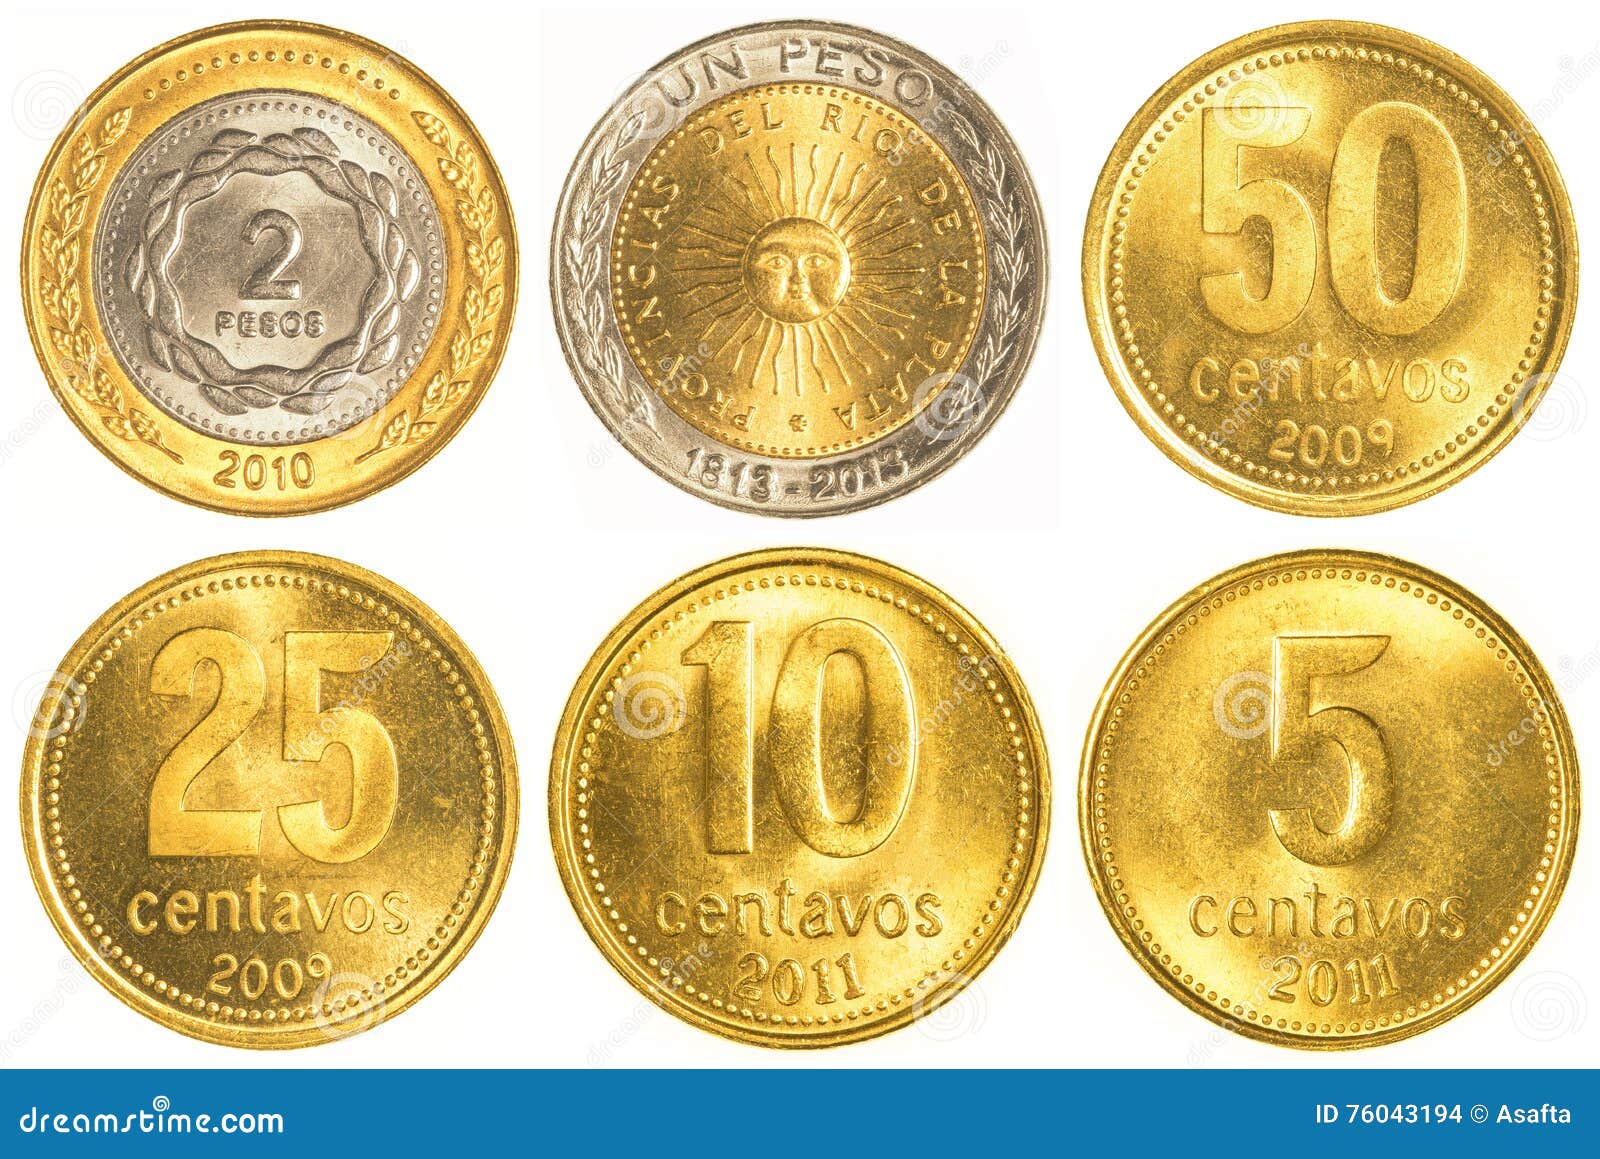 墨西哥、阿根廷、比利时、泰国、老挝硬币 - 铜元和机制币 - 古泉社区